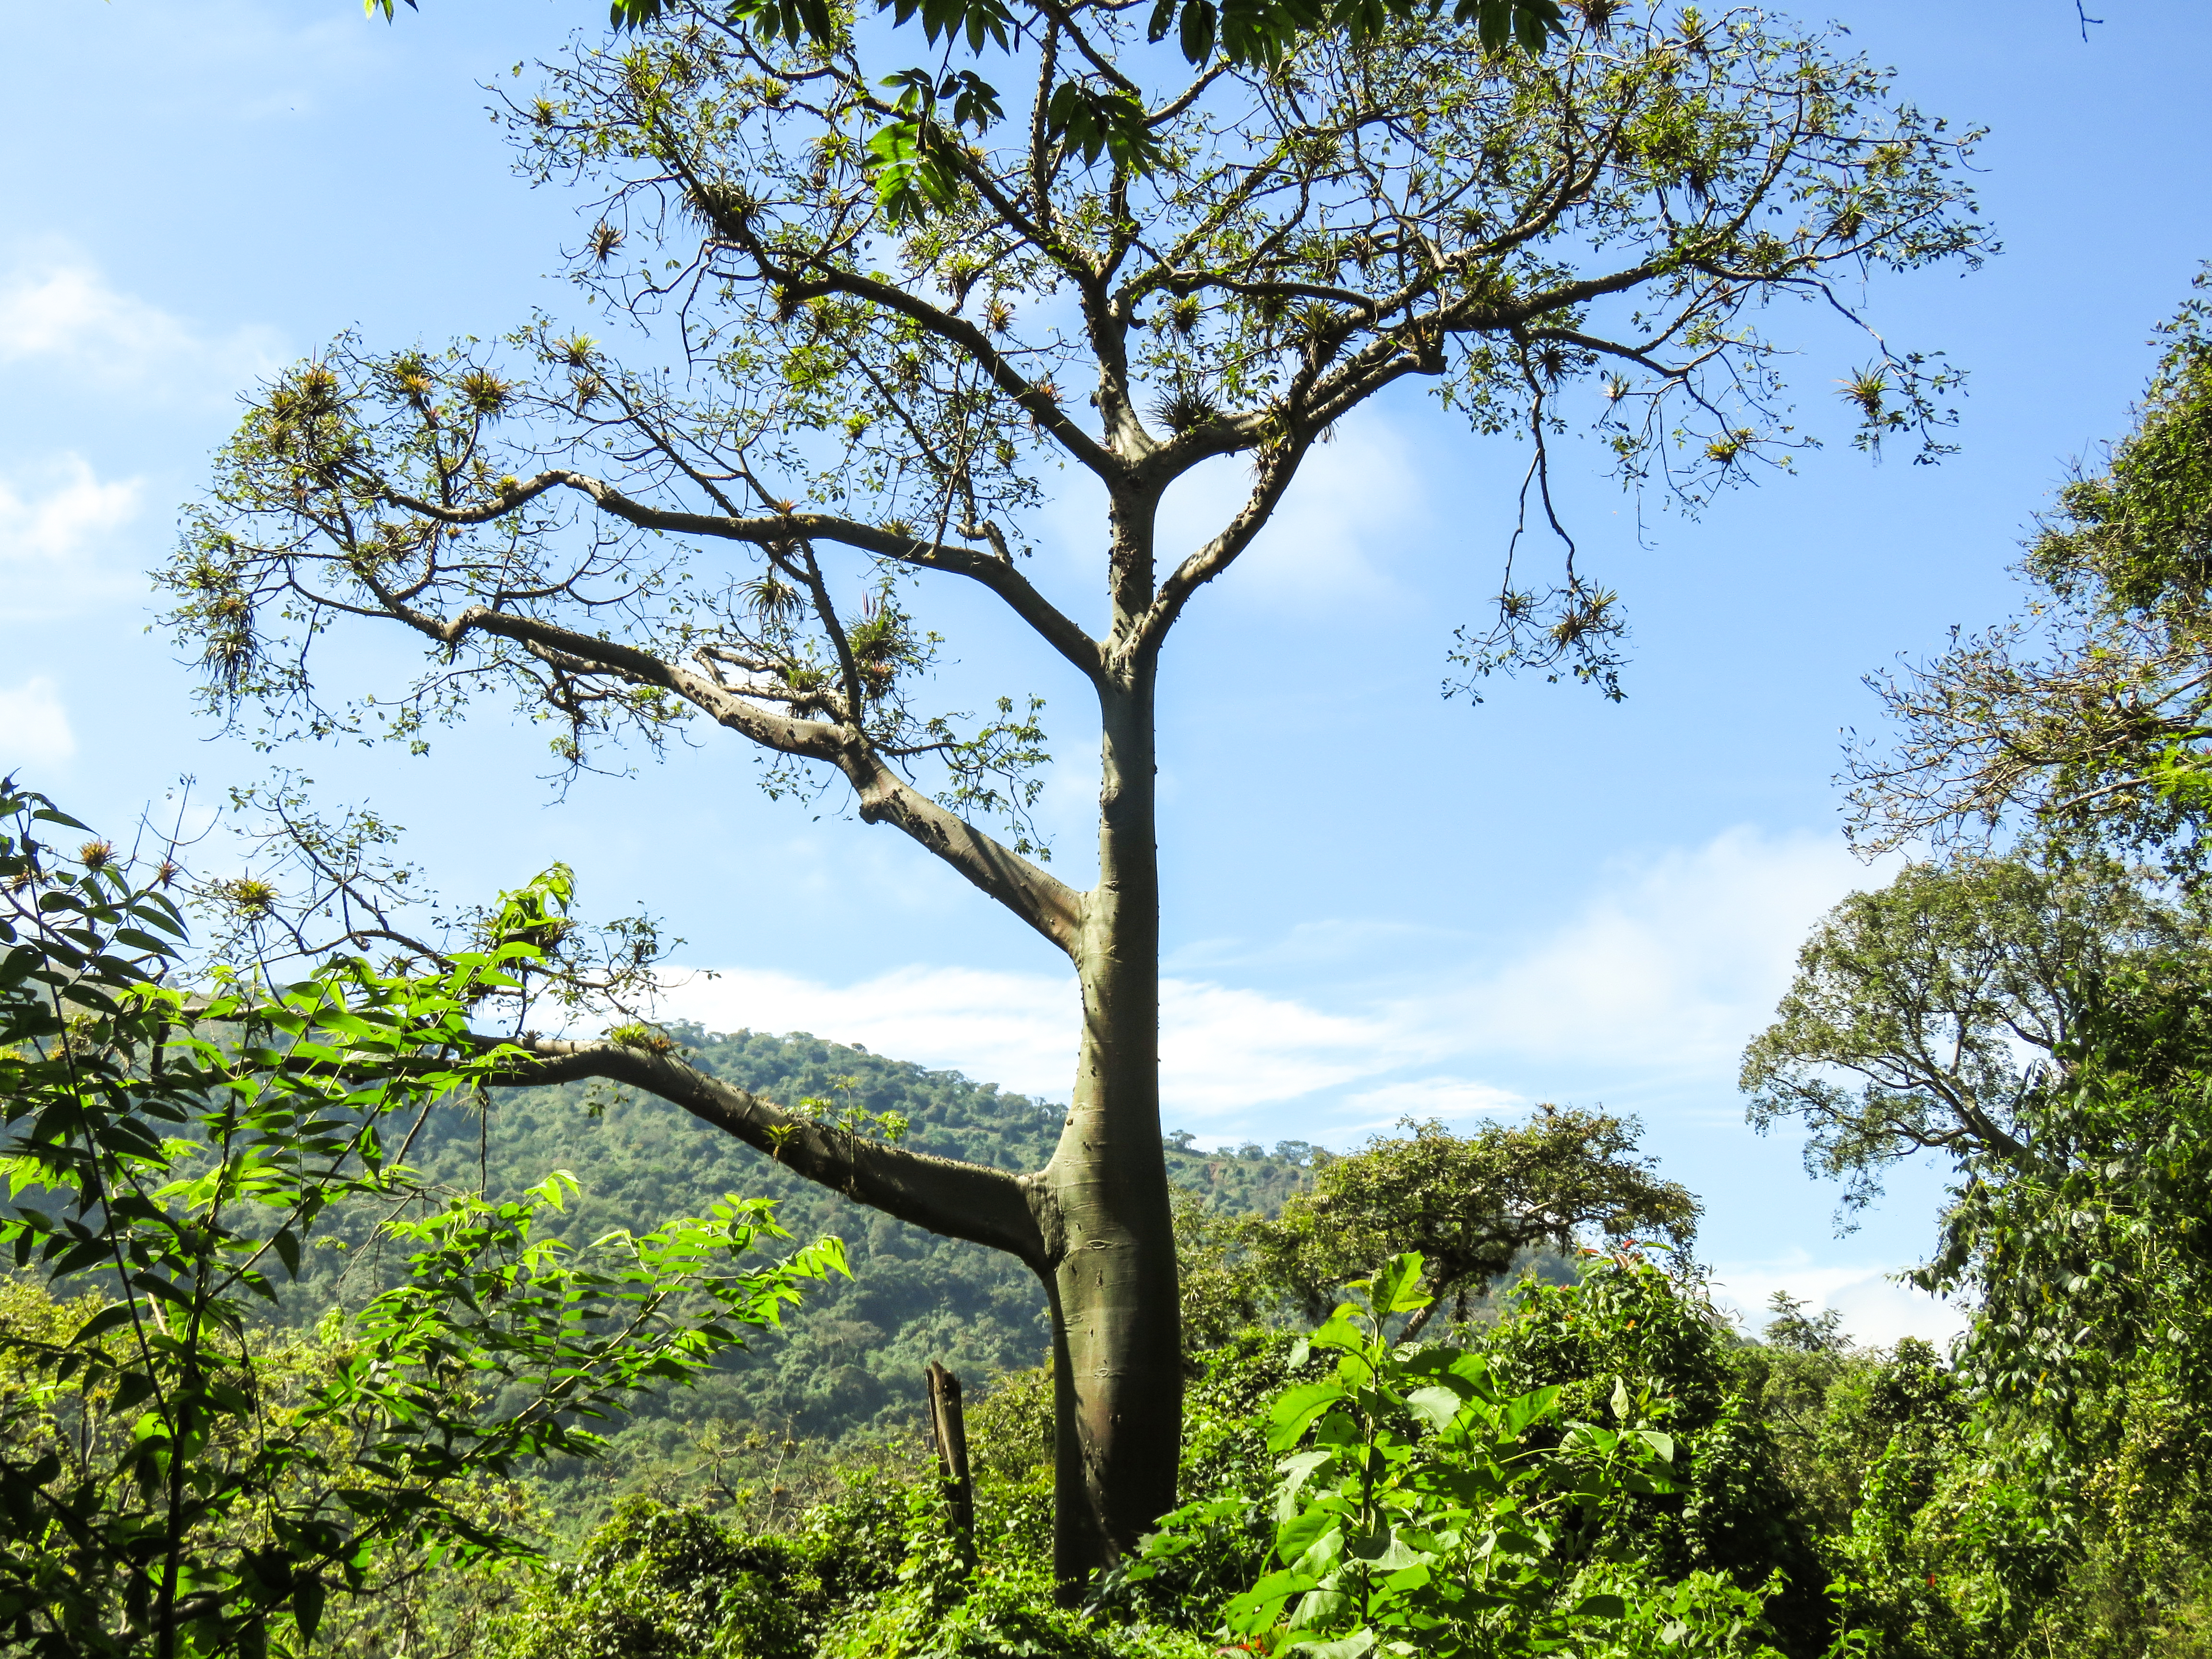 Reforestación en el bosque seco tumbesino del Ecuador